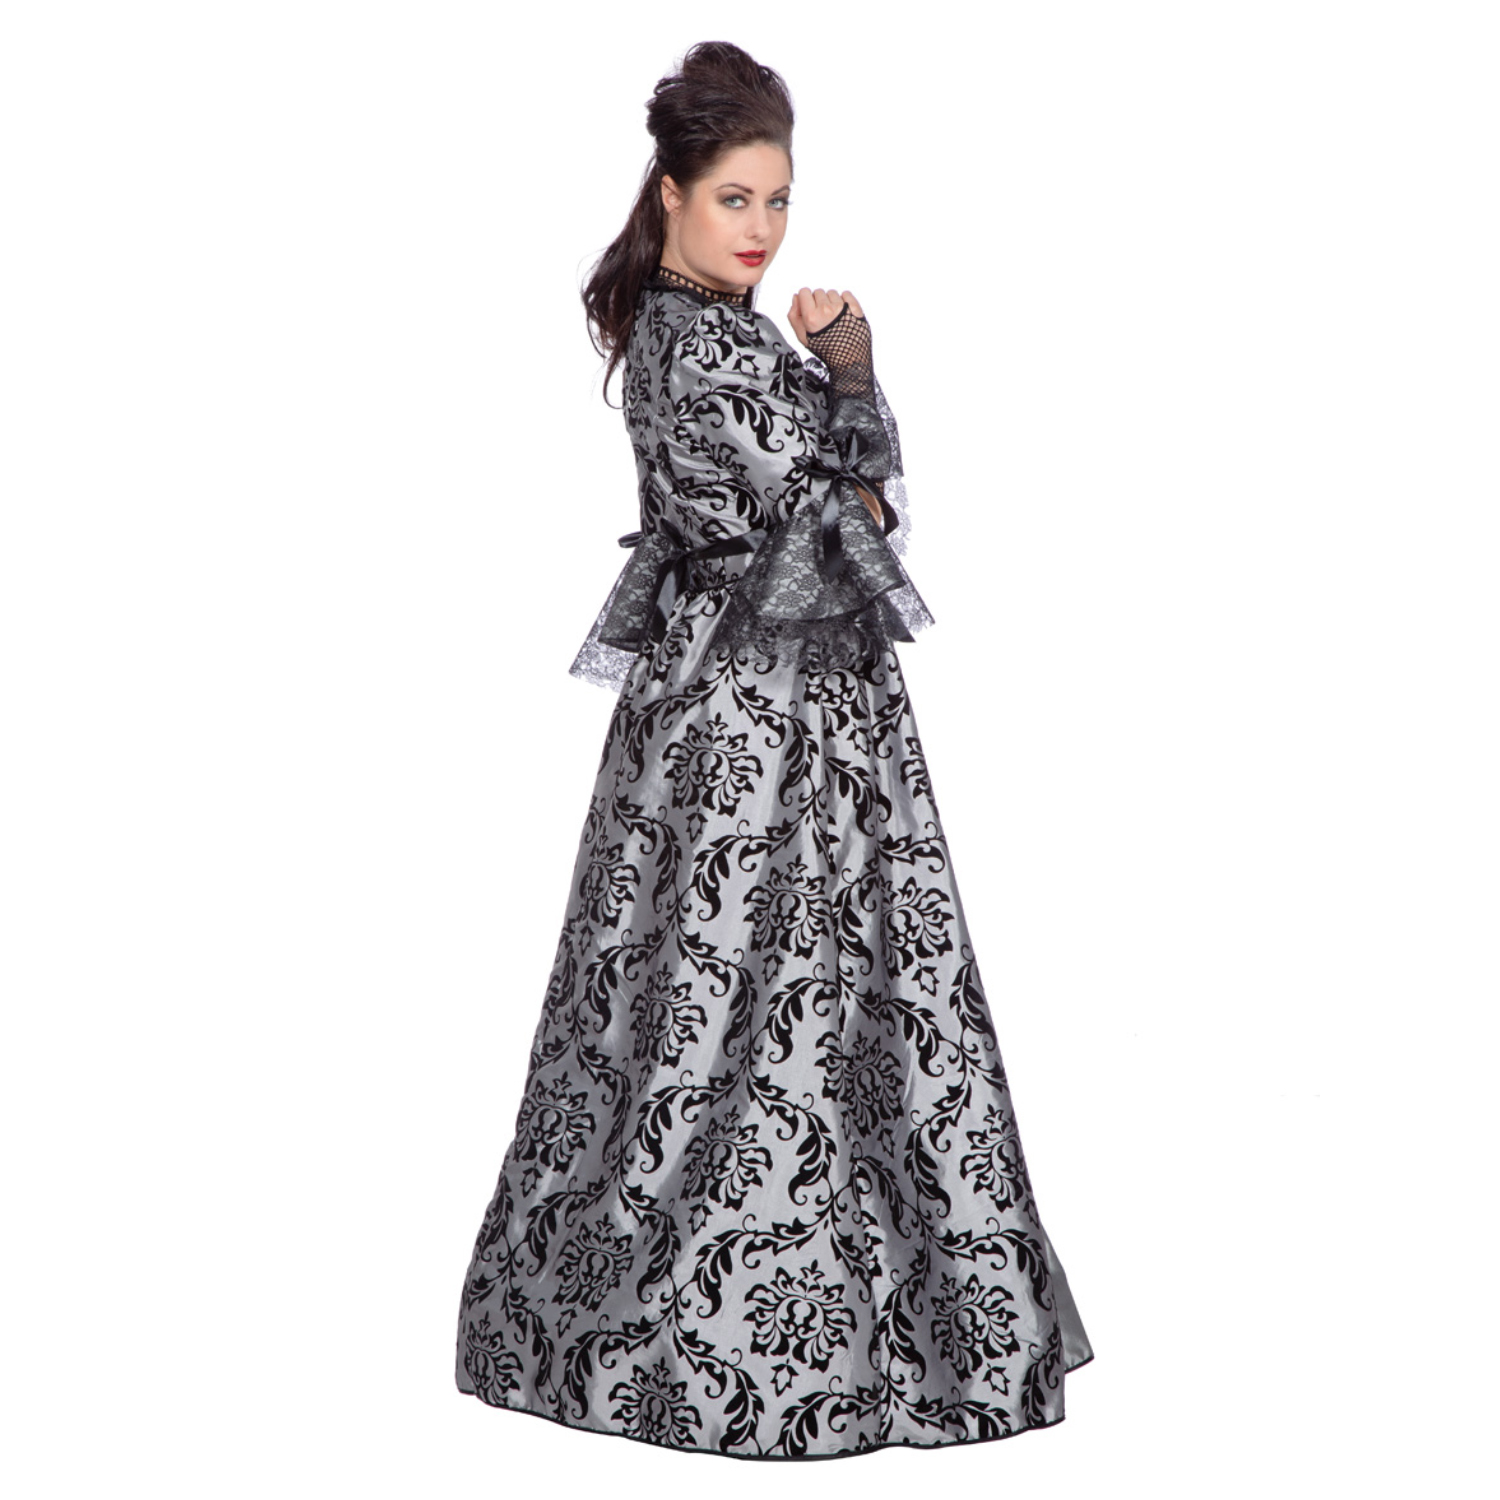 NEU Damen-Kostm Luxus Kleid Marquise, Gr. 36 Bild 2